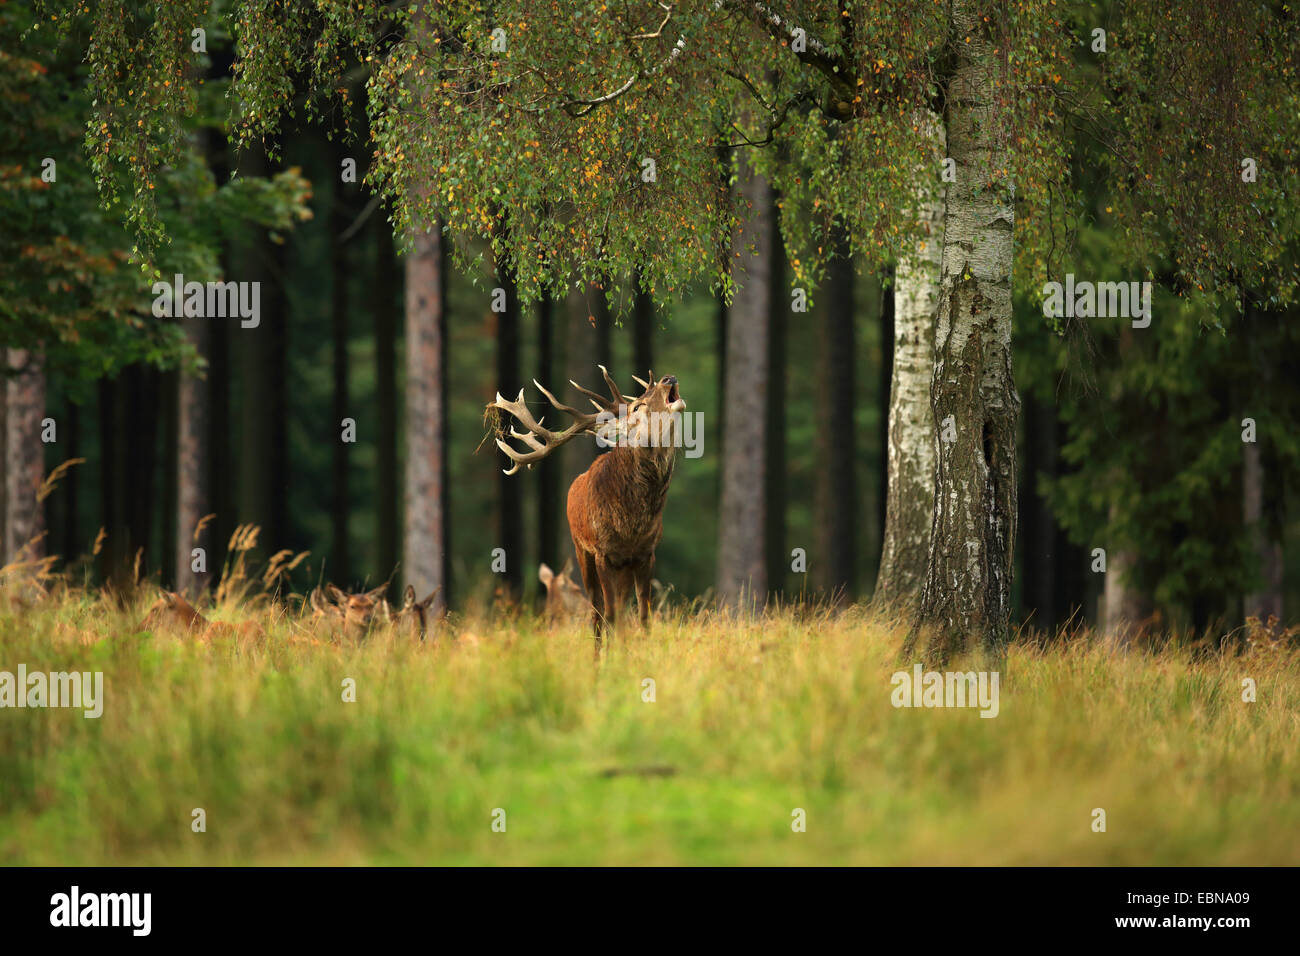 red deer (Cervus elaphus), roaring stag, Germany, Saxony Stock Photo